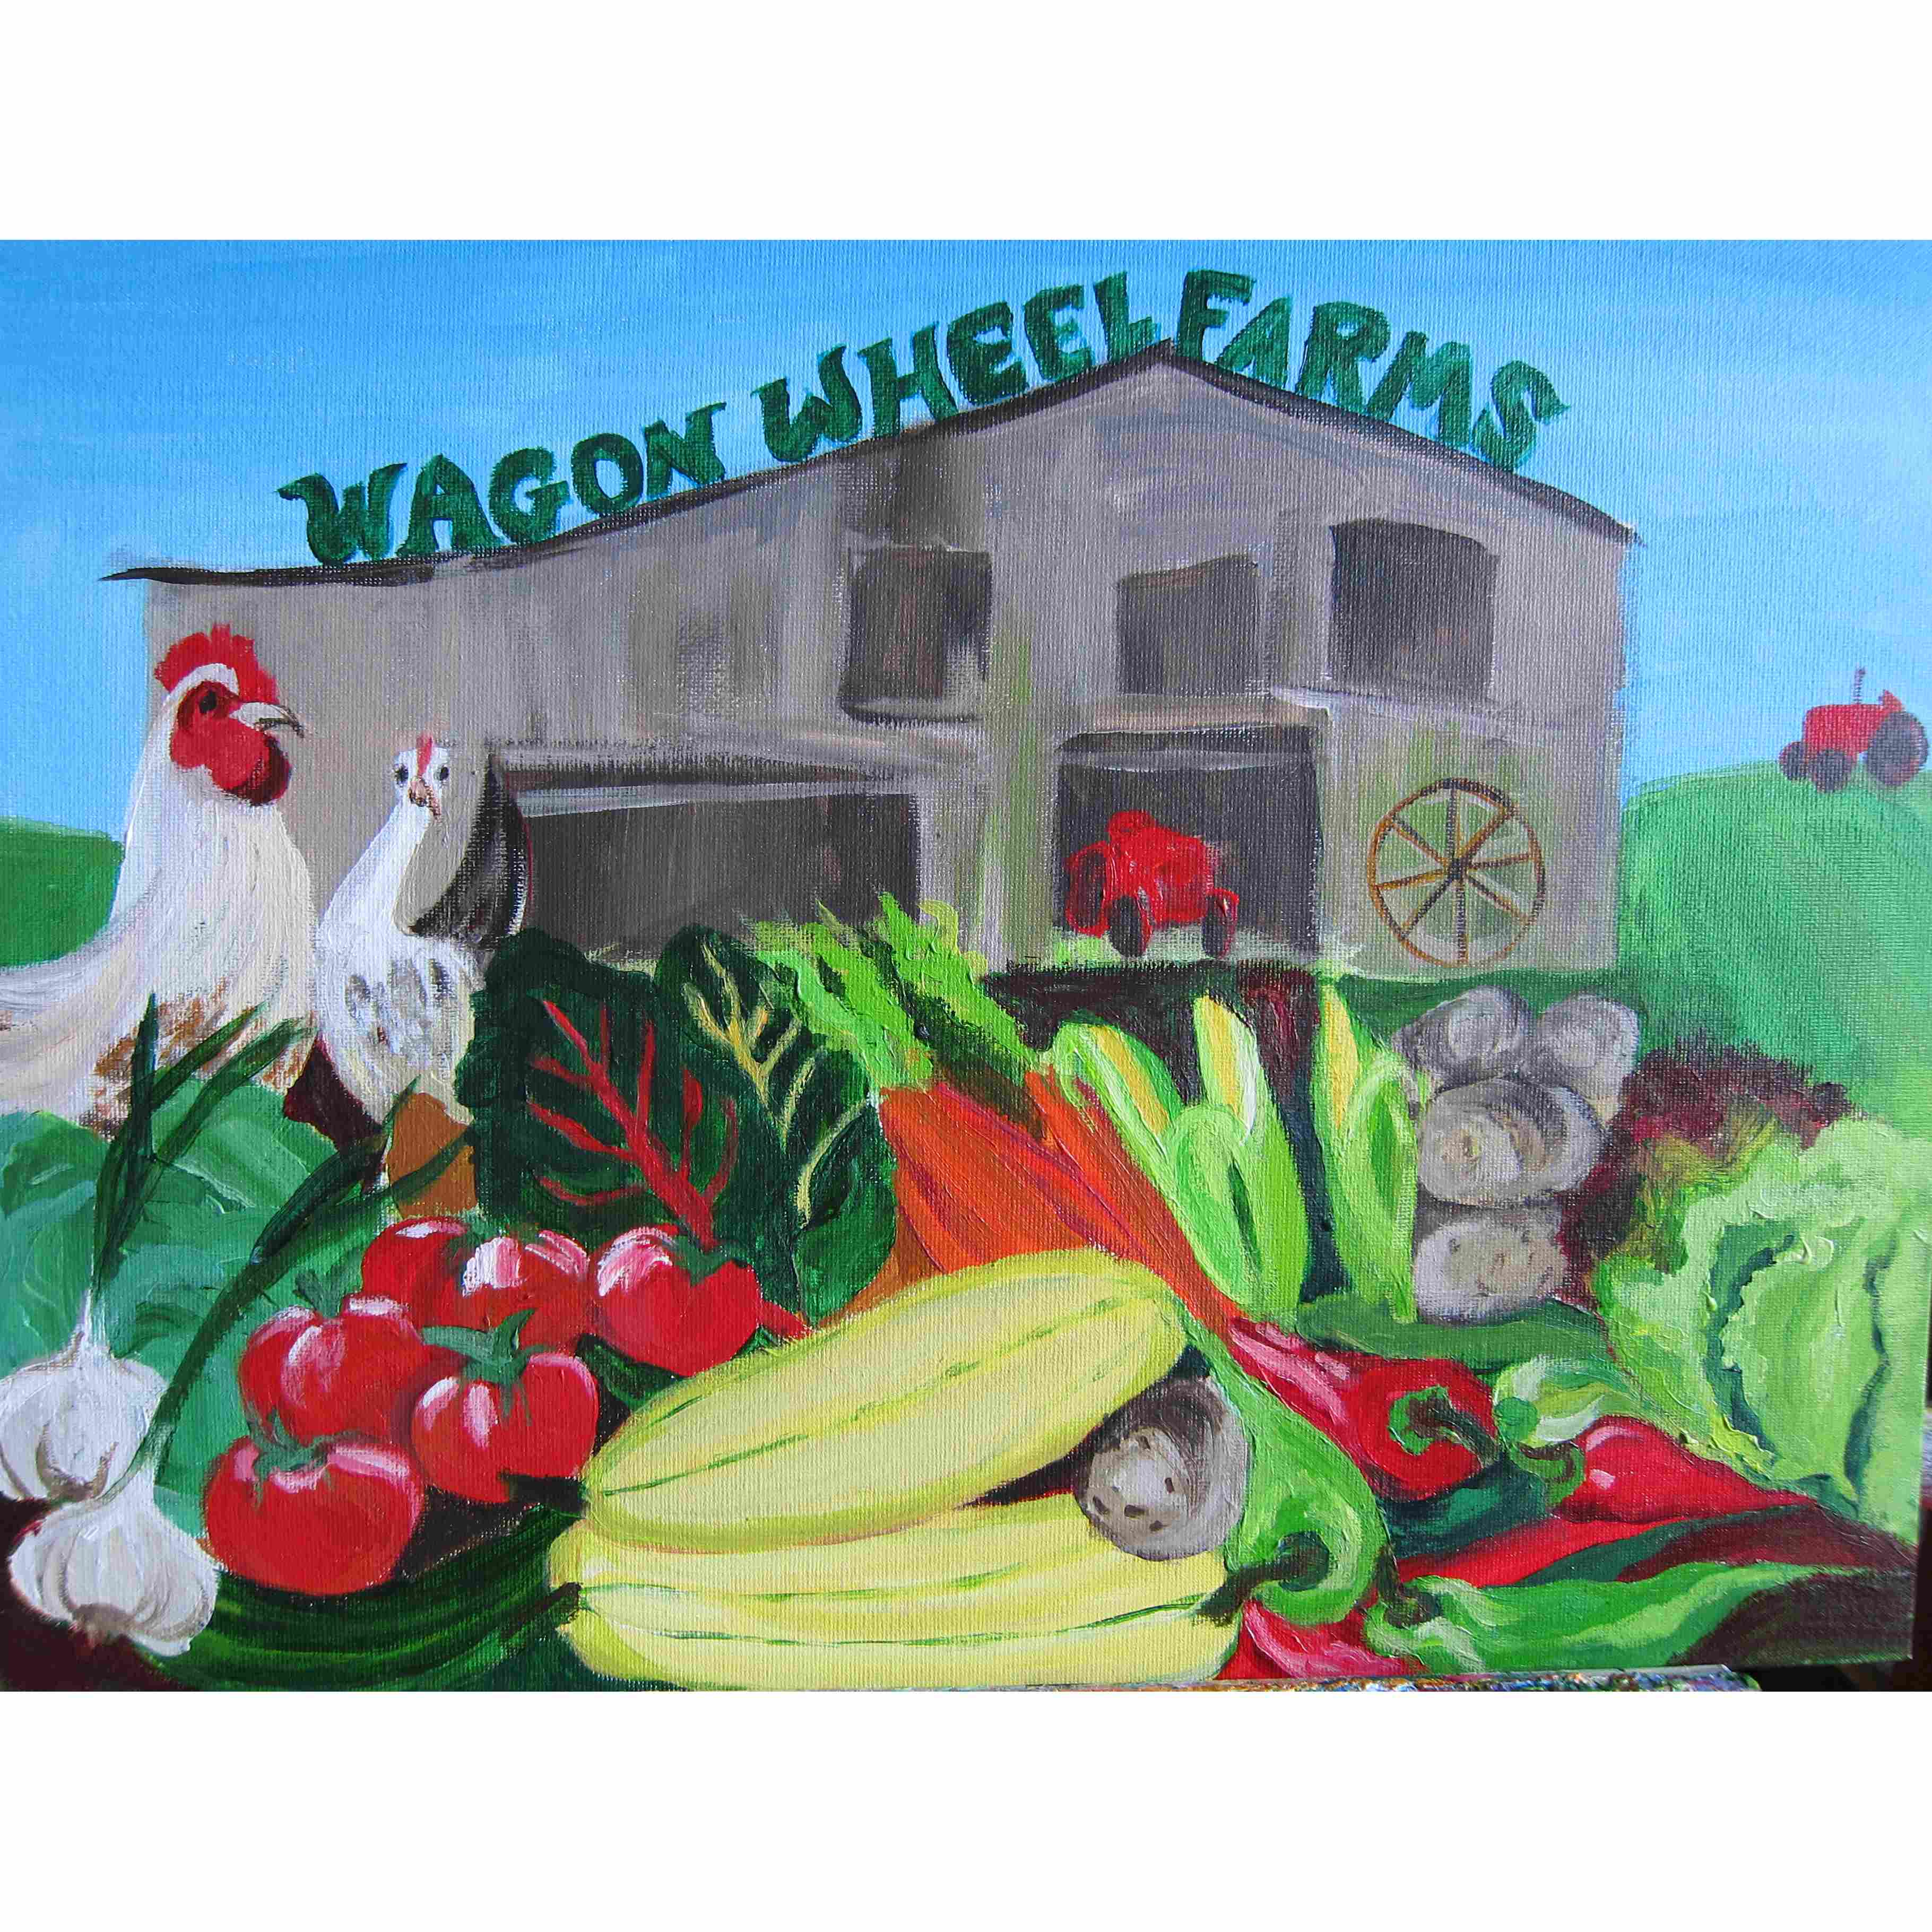 Wagon Wheel Farm